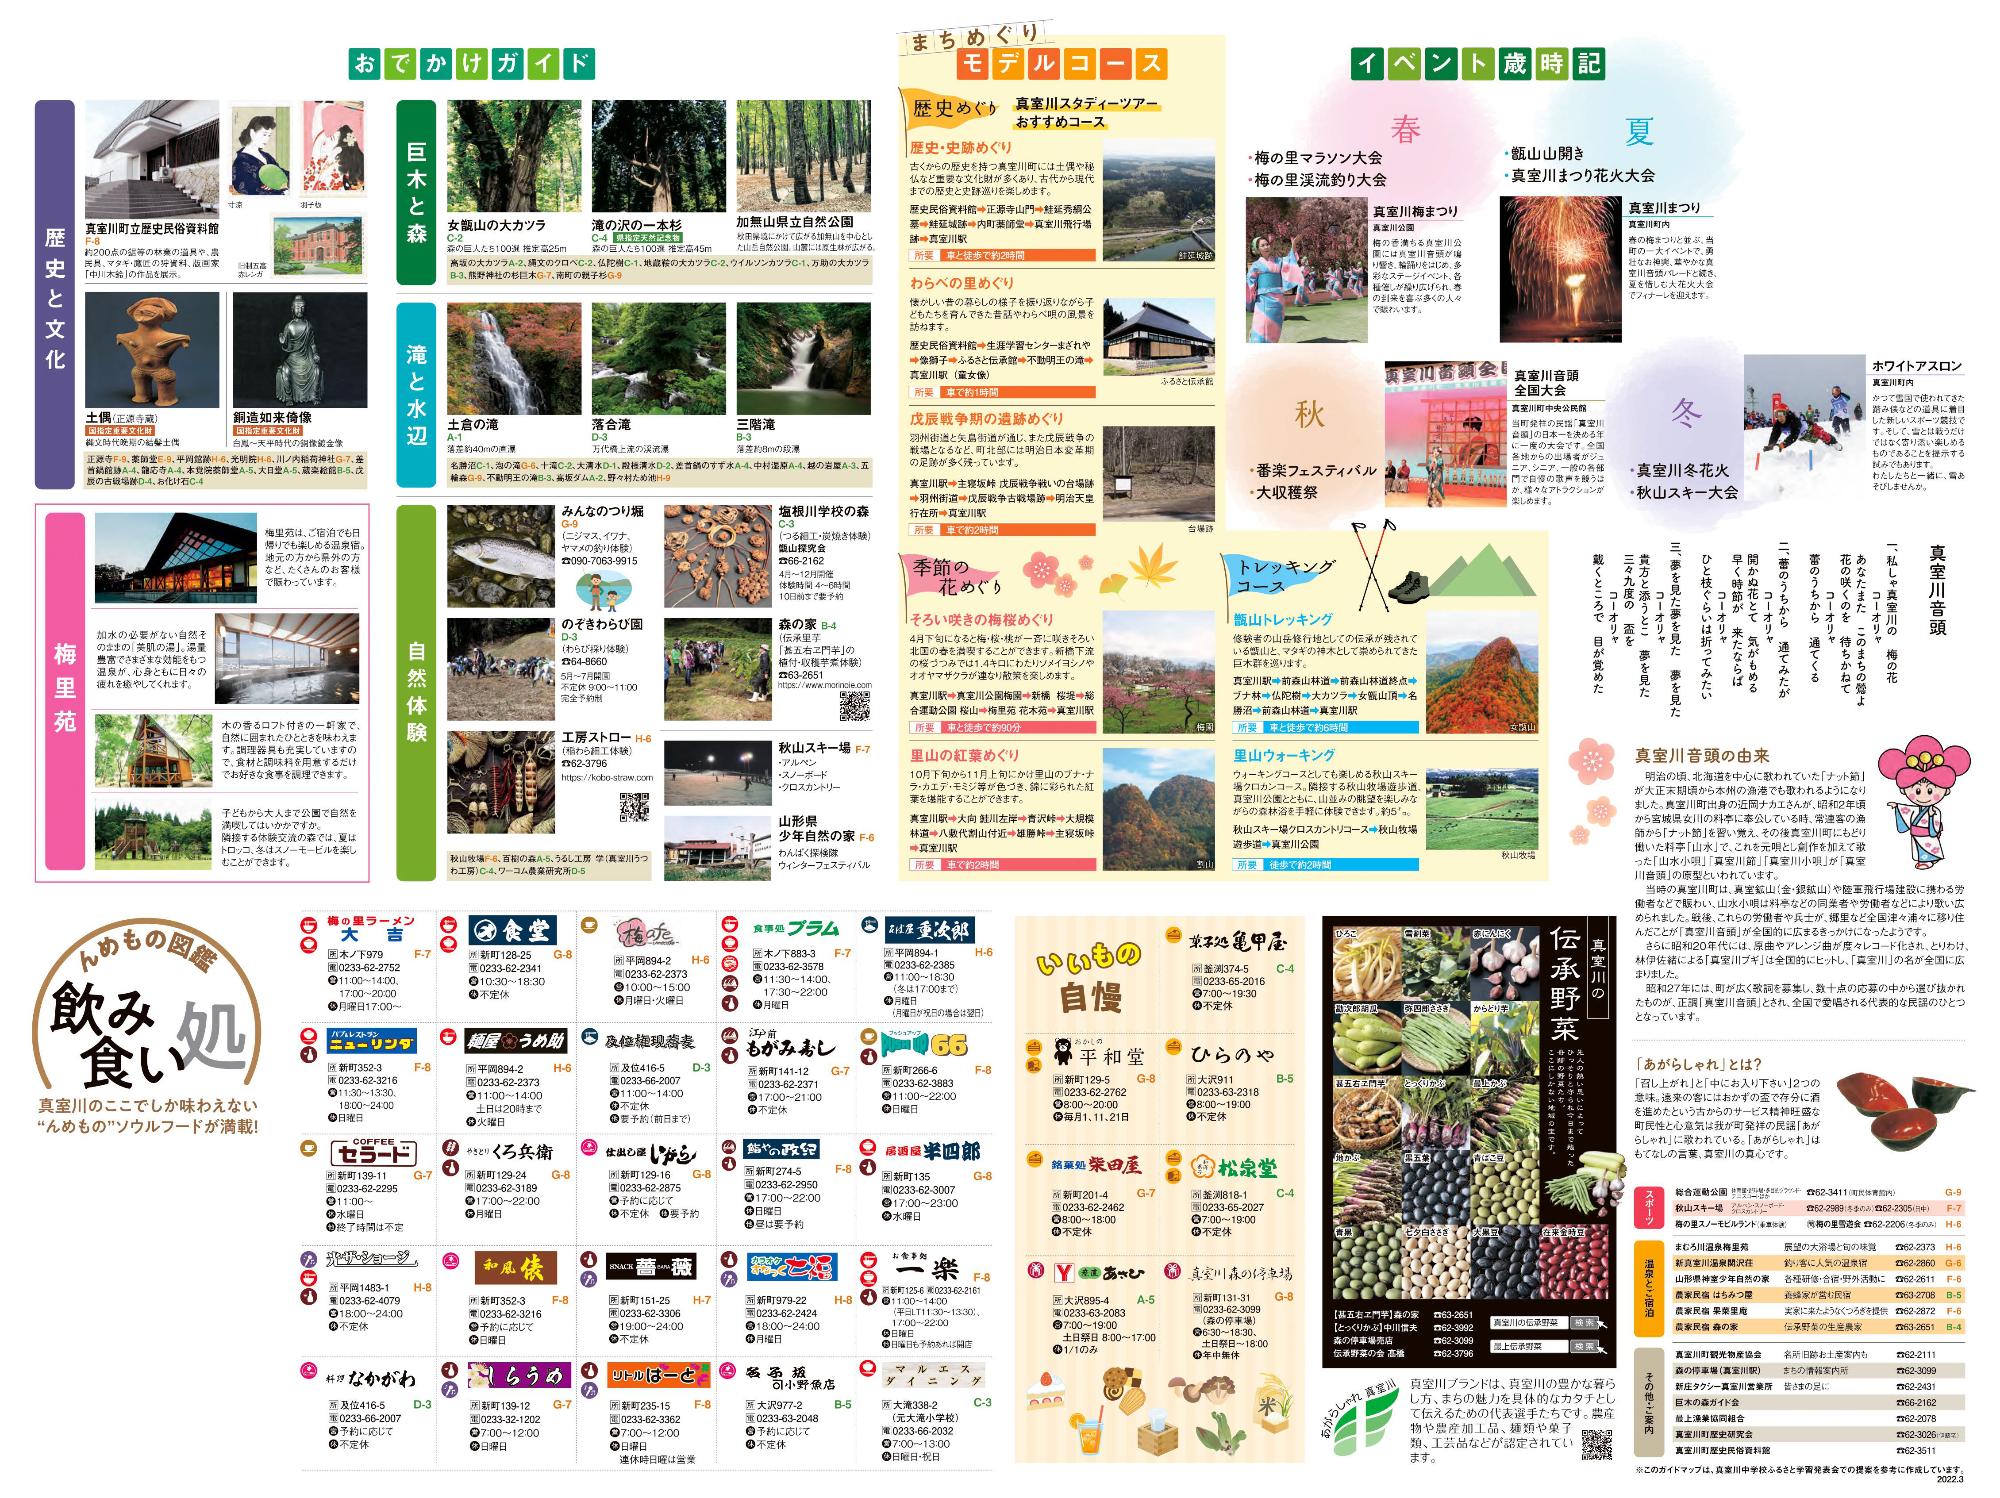 おでかけガイドなど観光情報が載っている真室川町観光パンフレットの裏面 詳細は以下